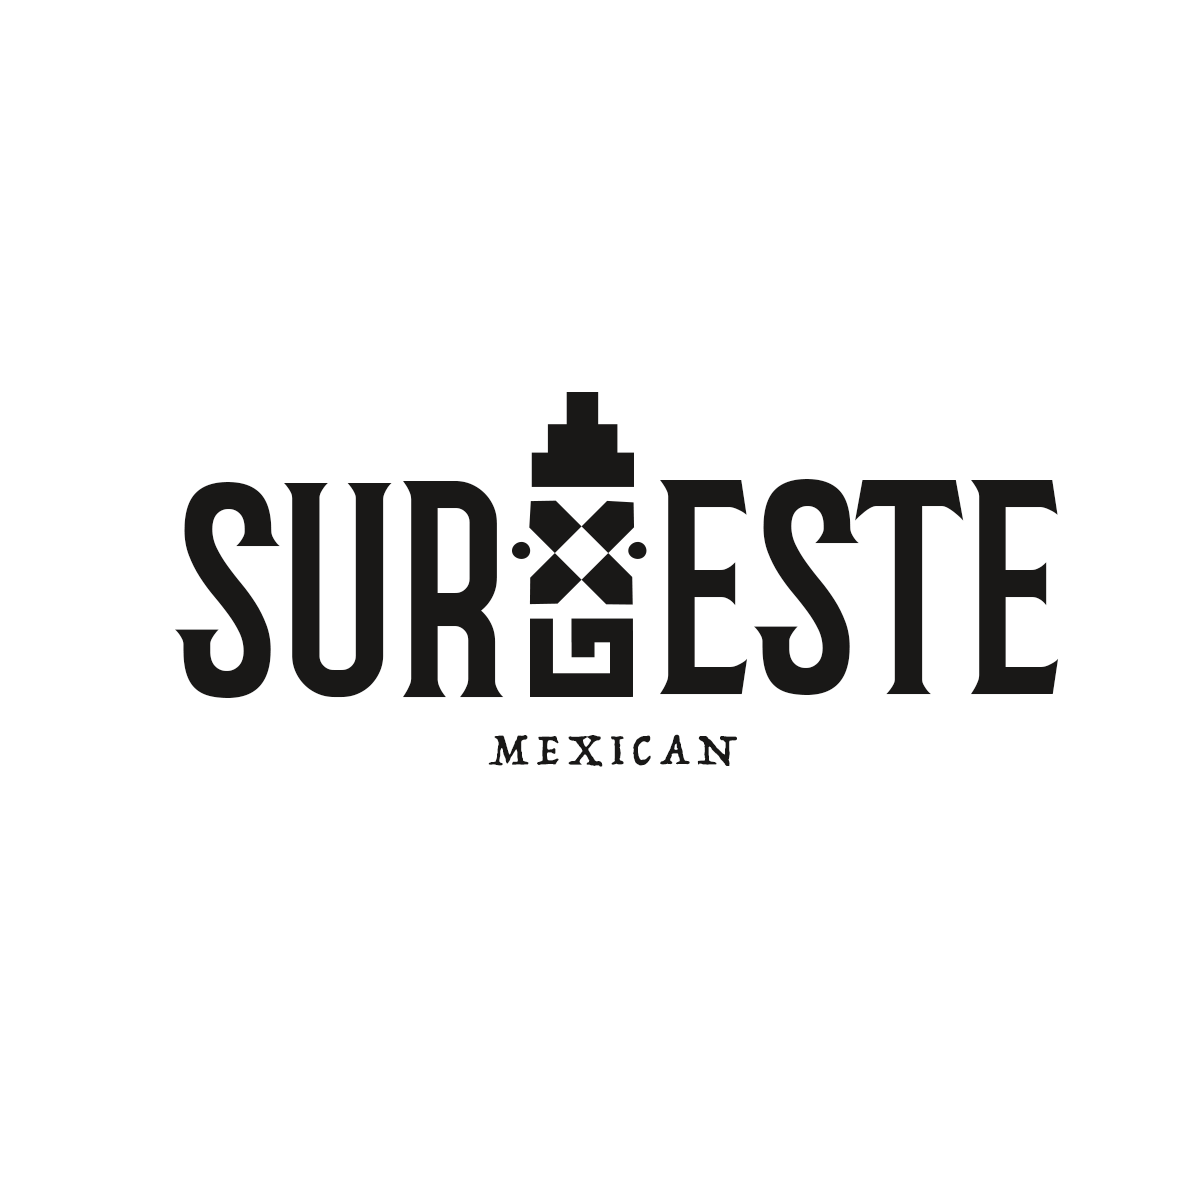 Sureste Mexican  FS 18 - Sureste Mexican